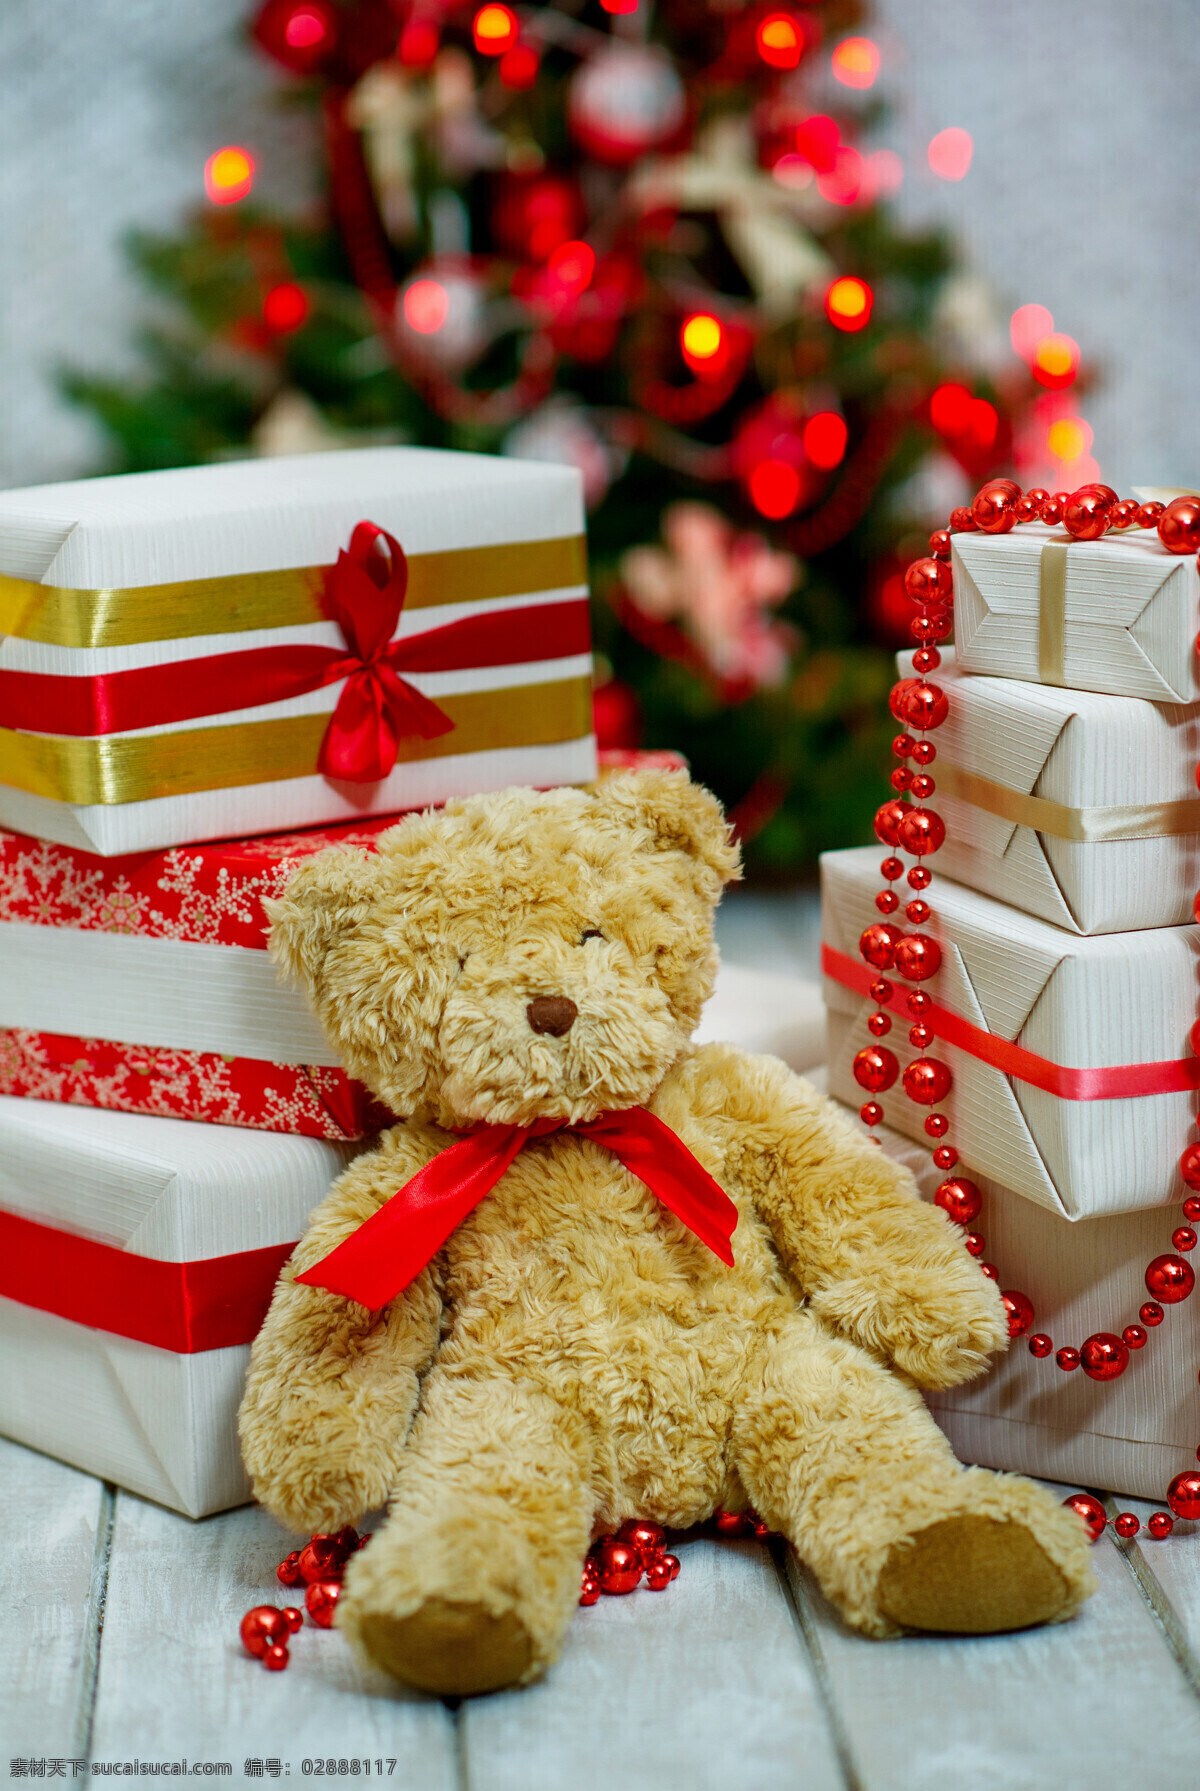 毛绒玩具 礼物 地板 礼盒 珠帘 圣诞树 圣诞球 其他类别 生活百科 红色